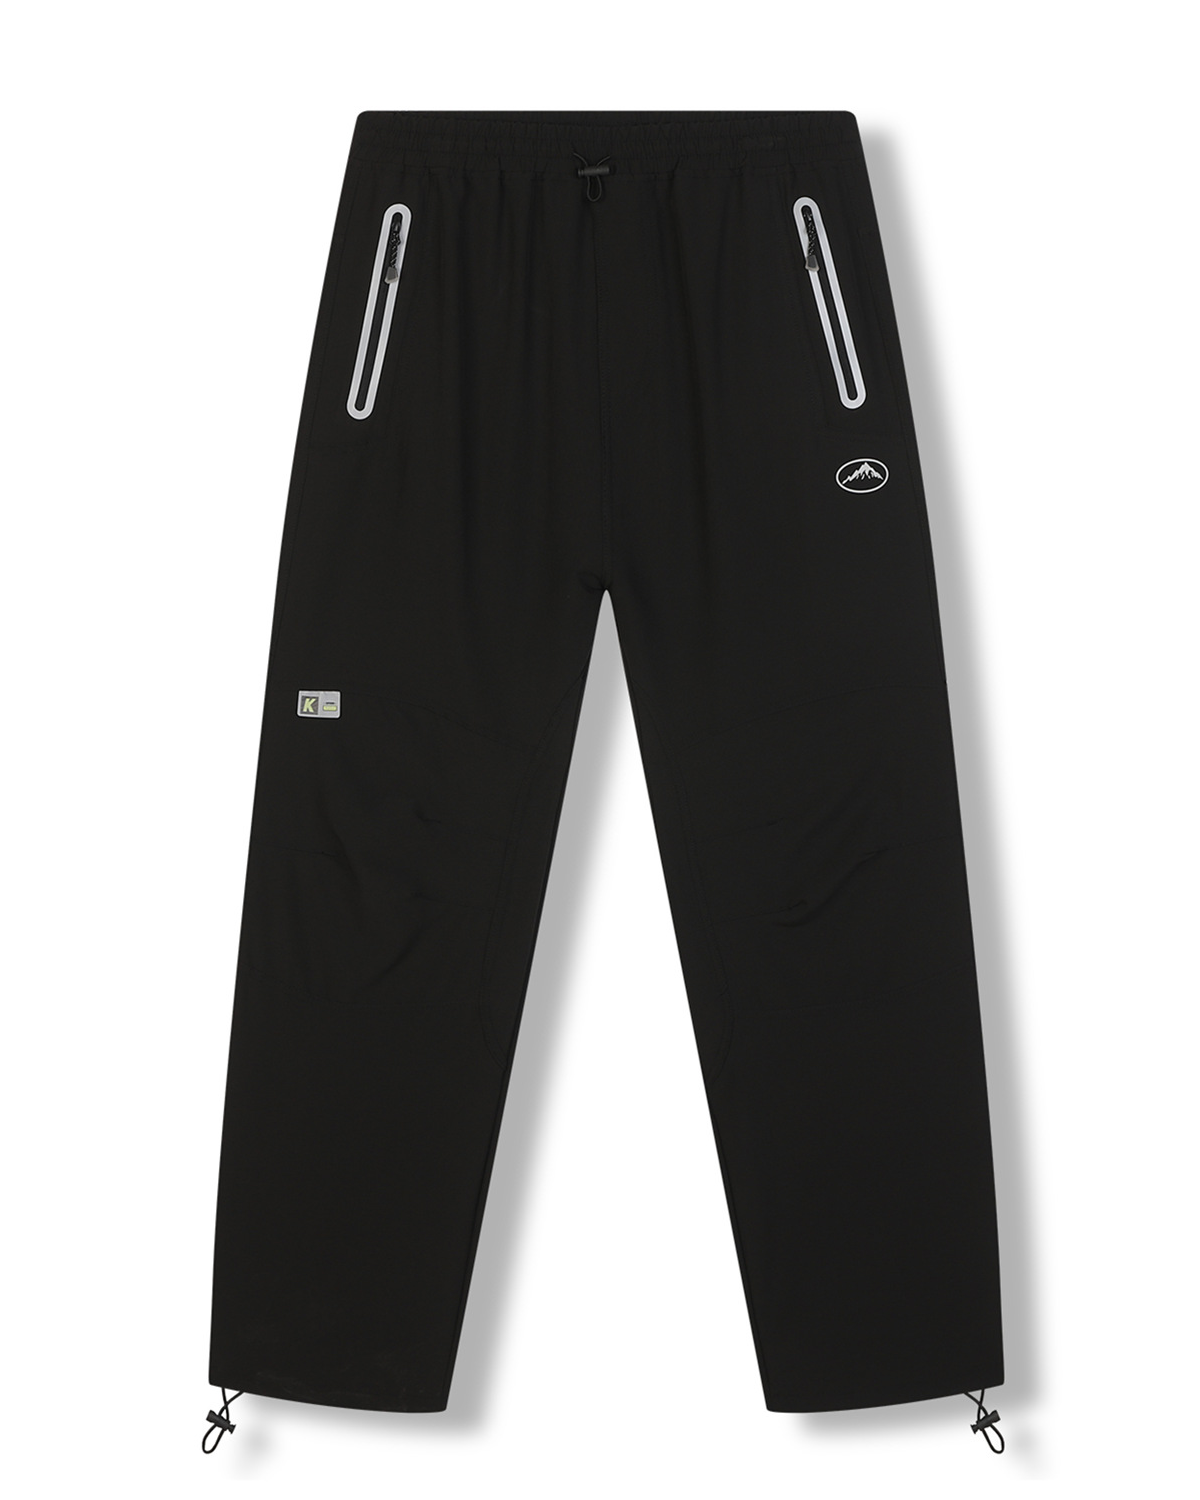 Pánské softshellové kalhoty - KUGO HK7588, celočerná Barva: Černá, Velikost: XXL